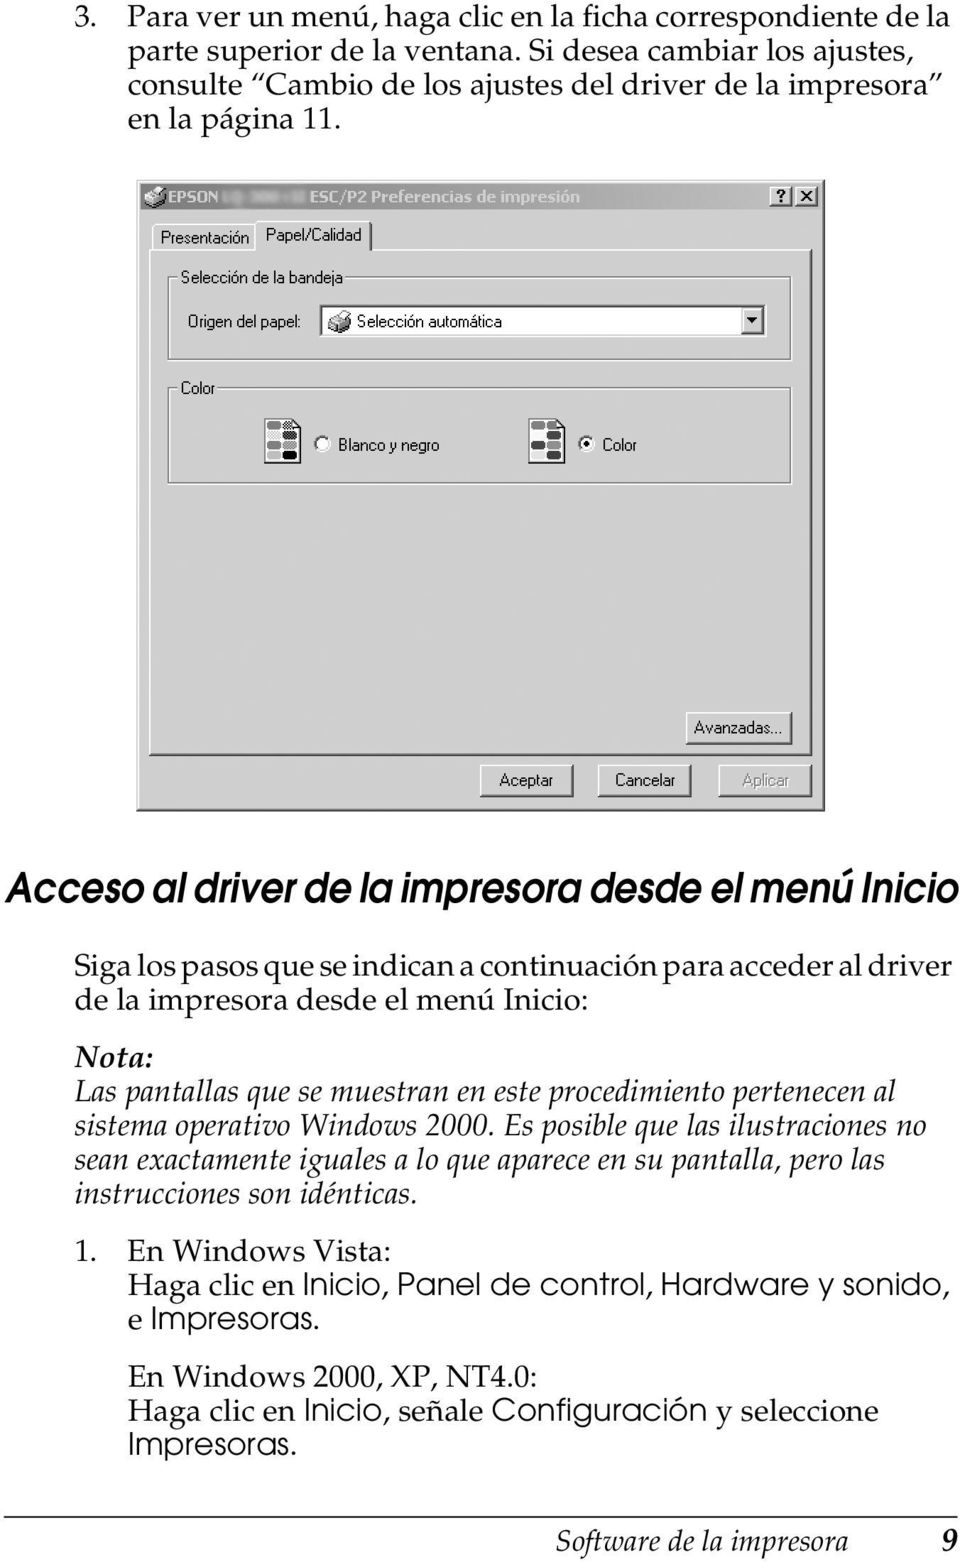 procedimiento pertenecen al sistema operativo Windows 2000. Es posible que las ilustraciones no sean exactamente iguales a lo que aparece en su pantalla, pero las instrucciones son idénticas. 1.